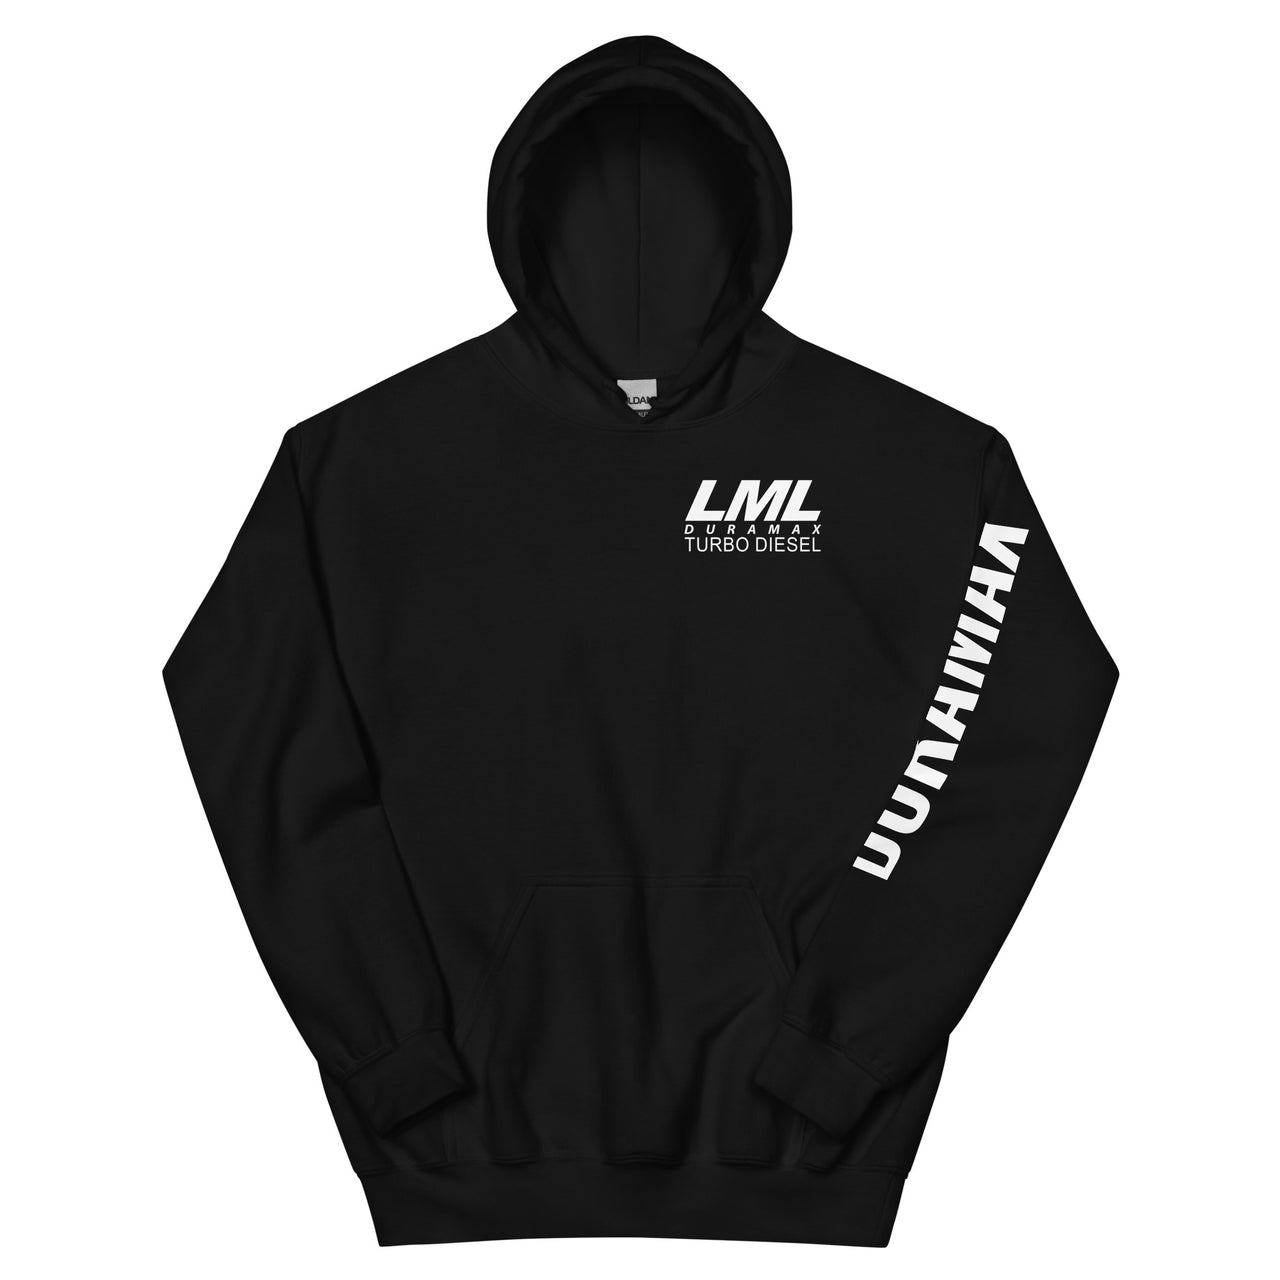 LML Duramax Hoodie Pullover Sweatshirt With Sleeve Print in black